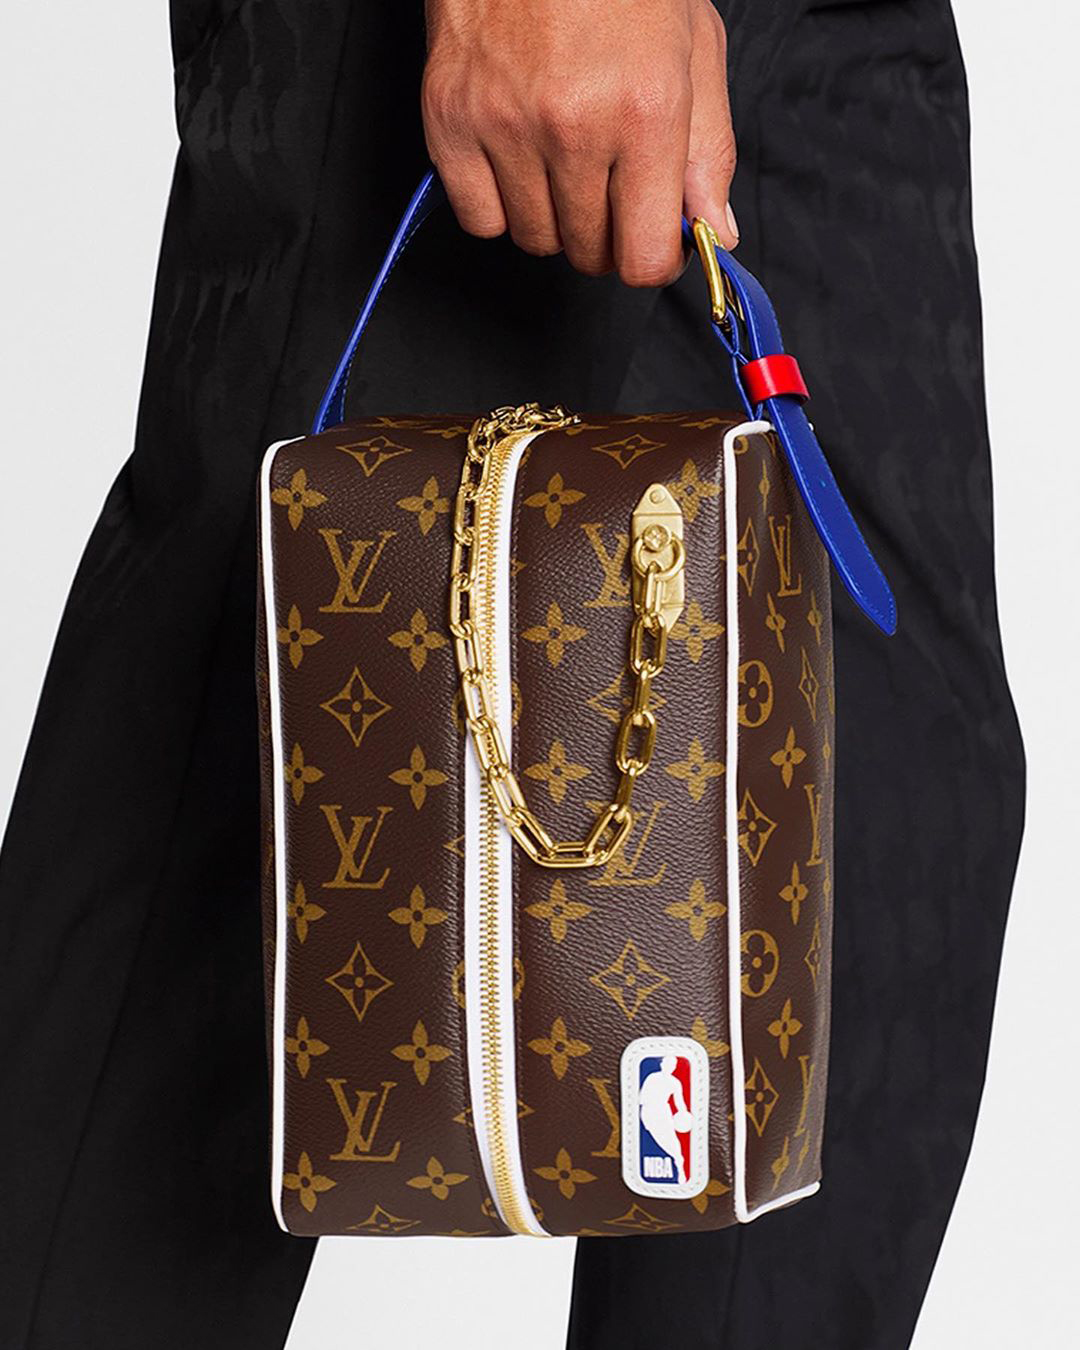 Louis Vuitton presenta su colección cápsula para hombre LV x NBA